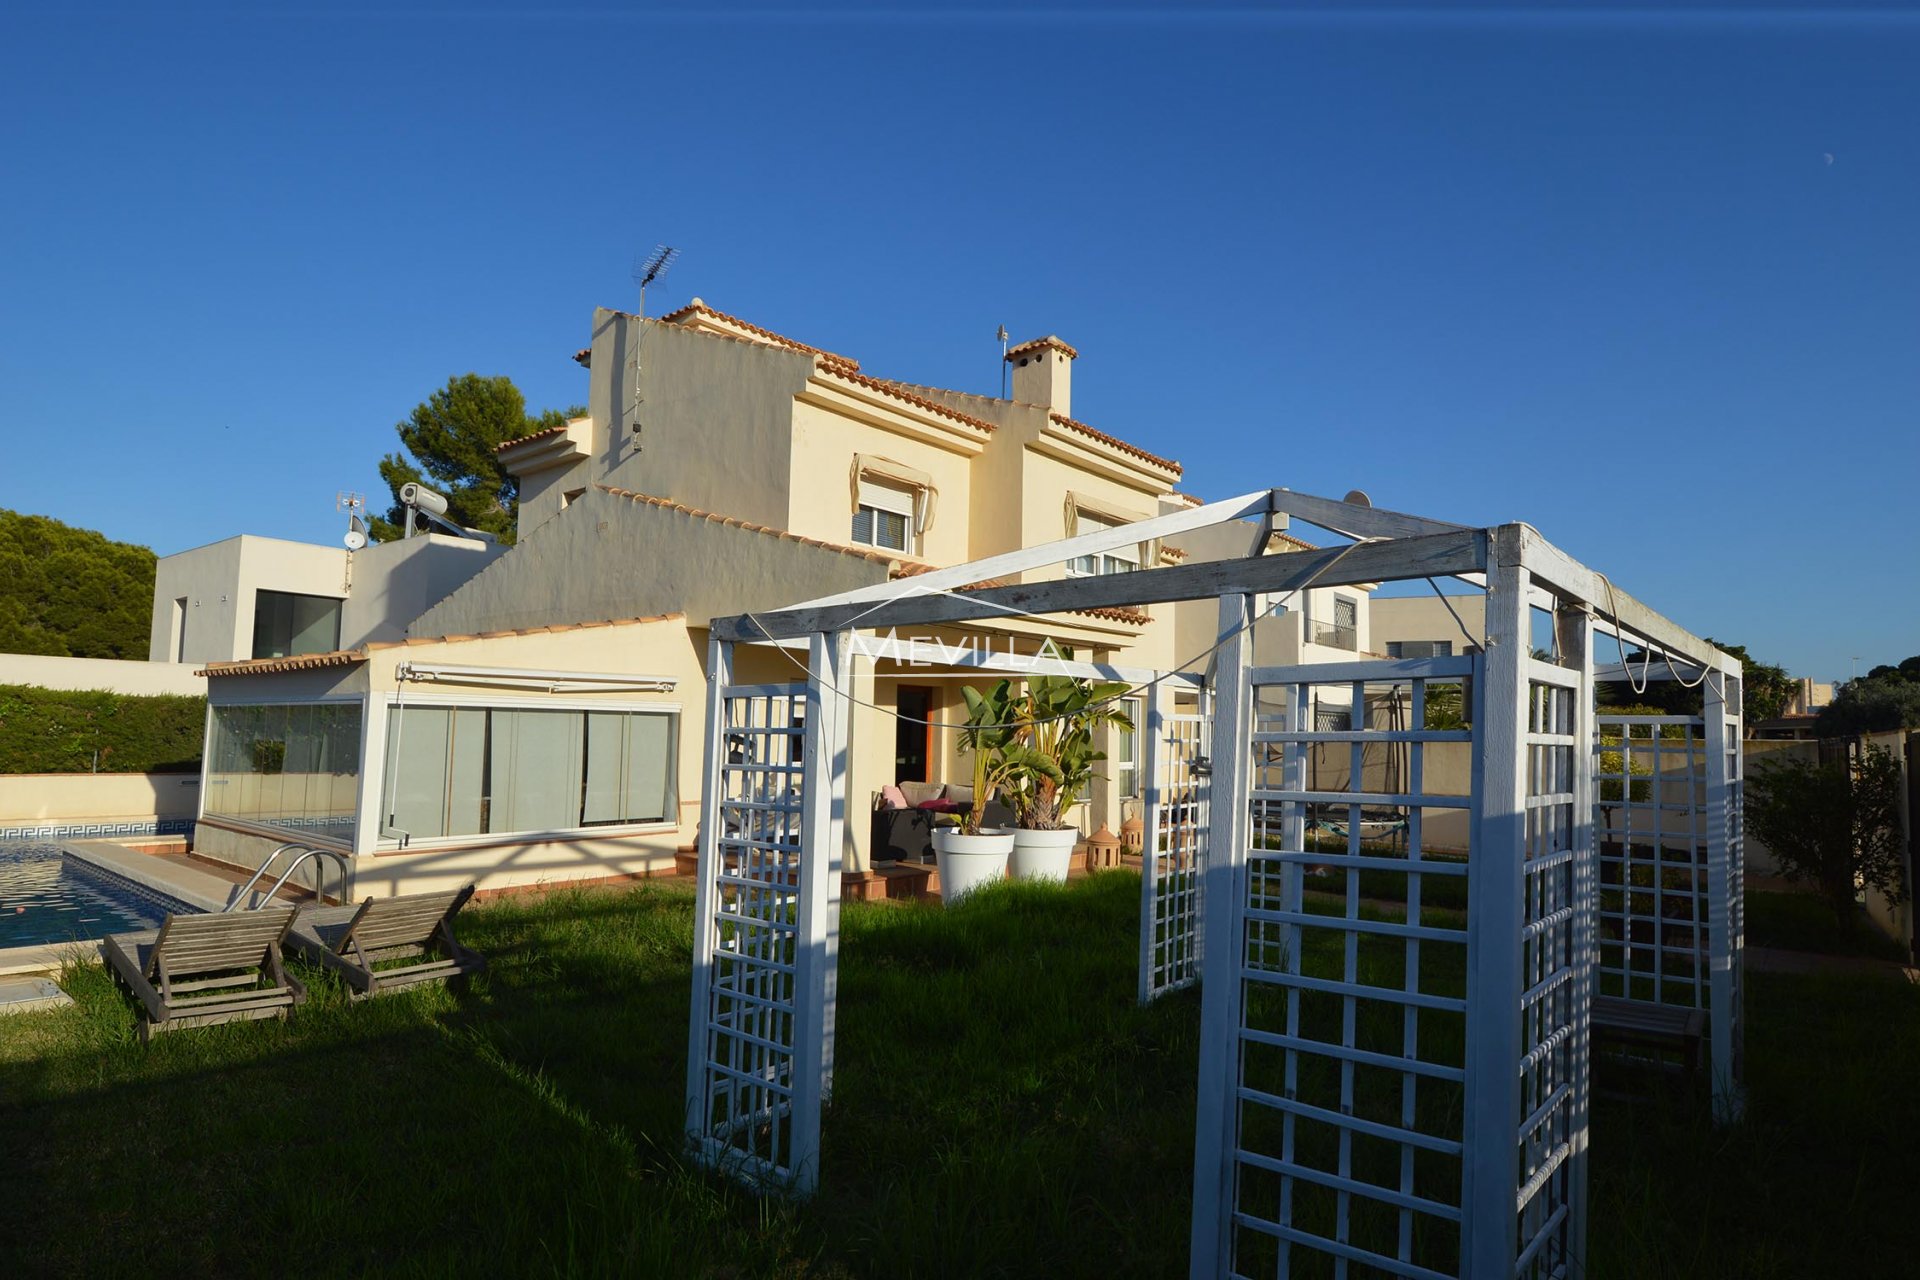 The villa with garden